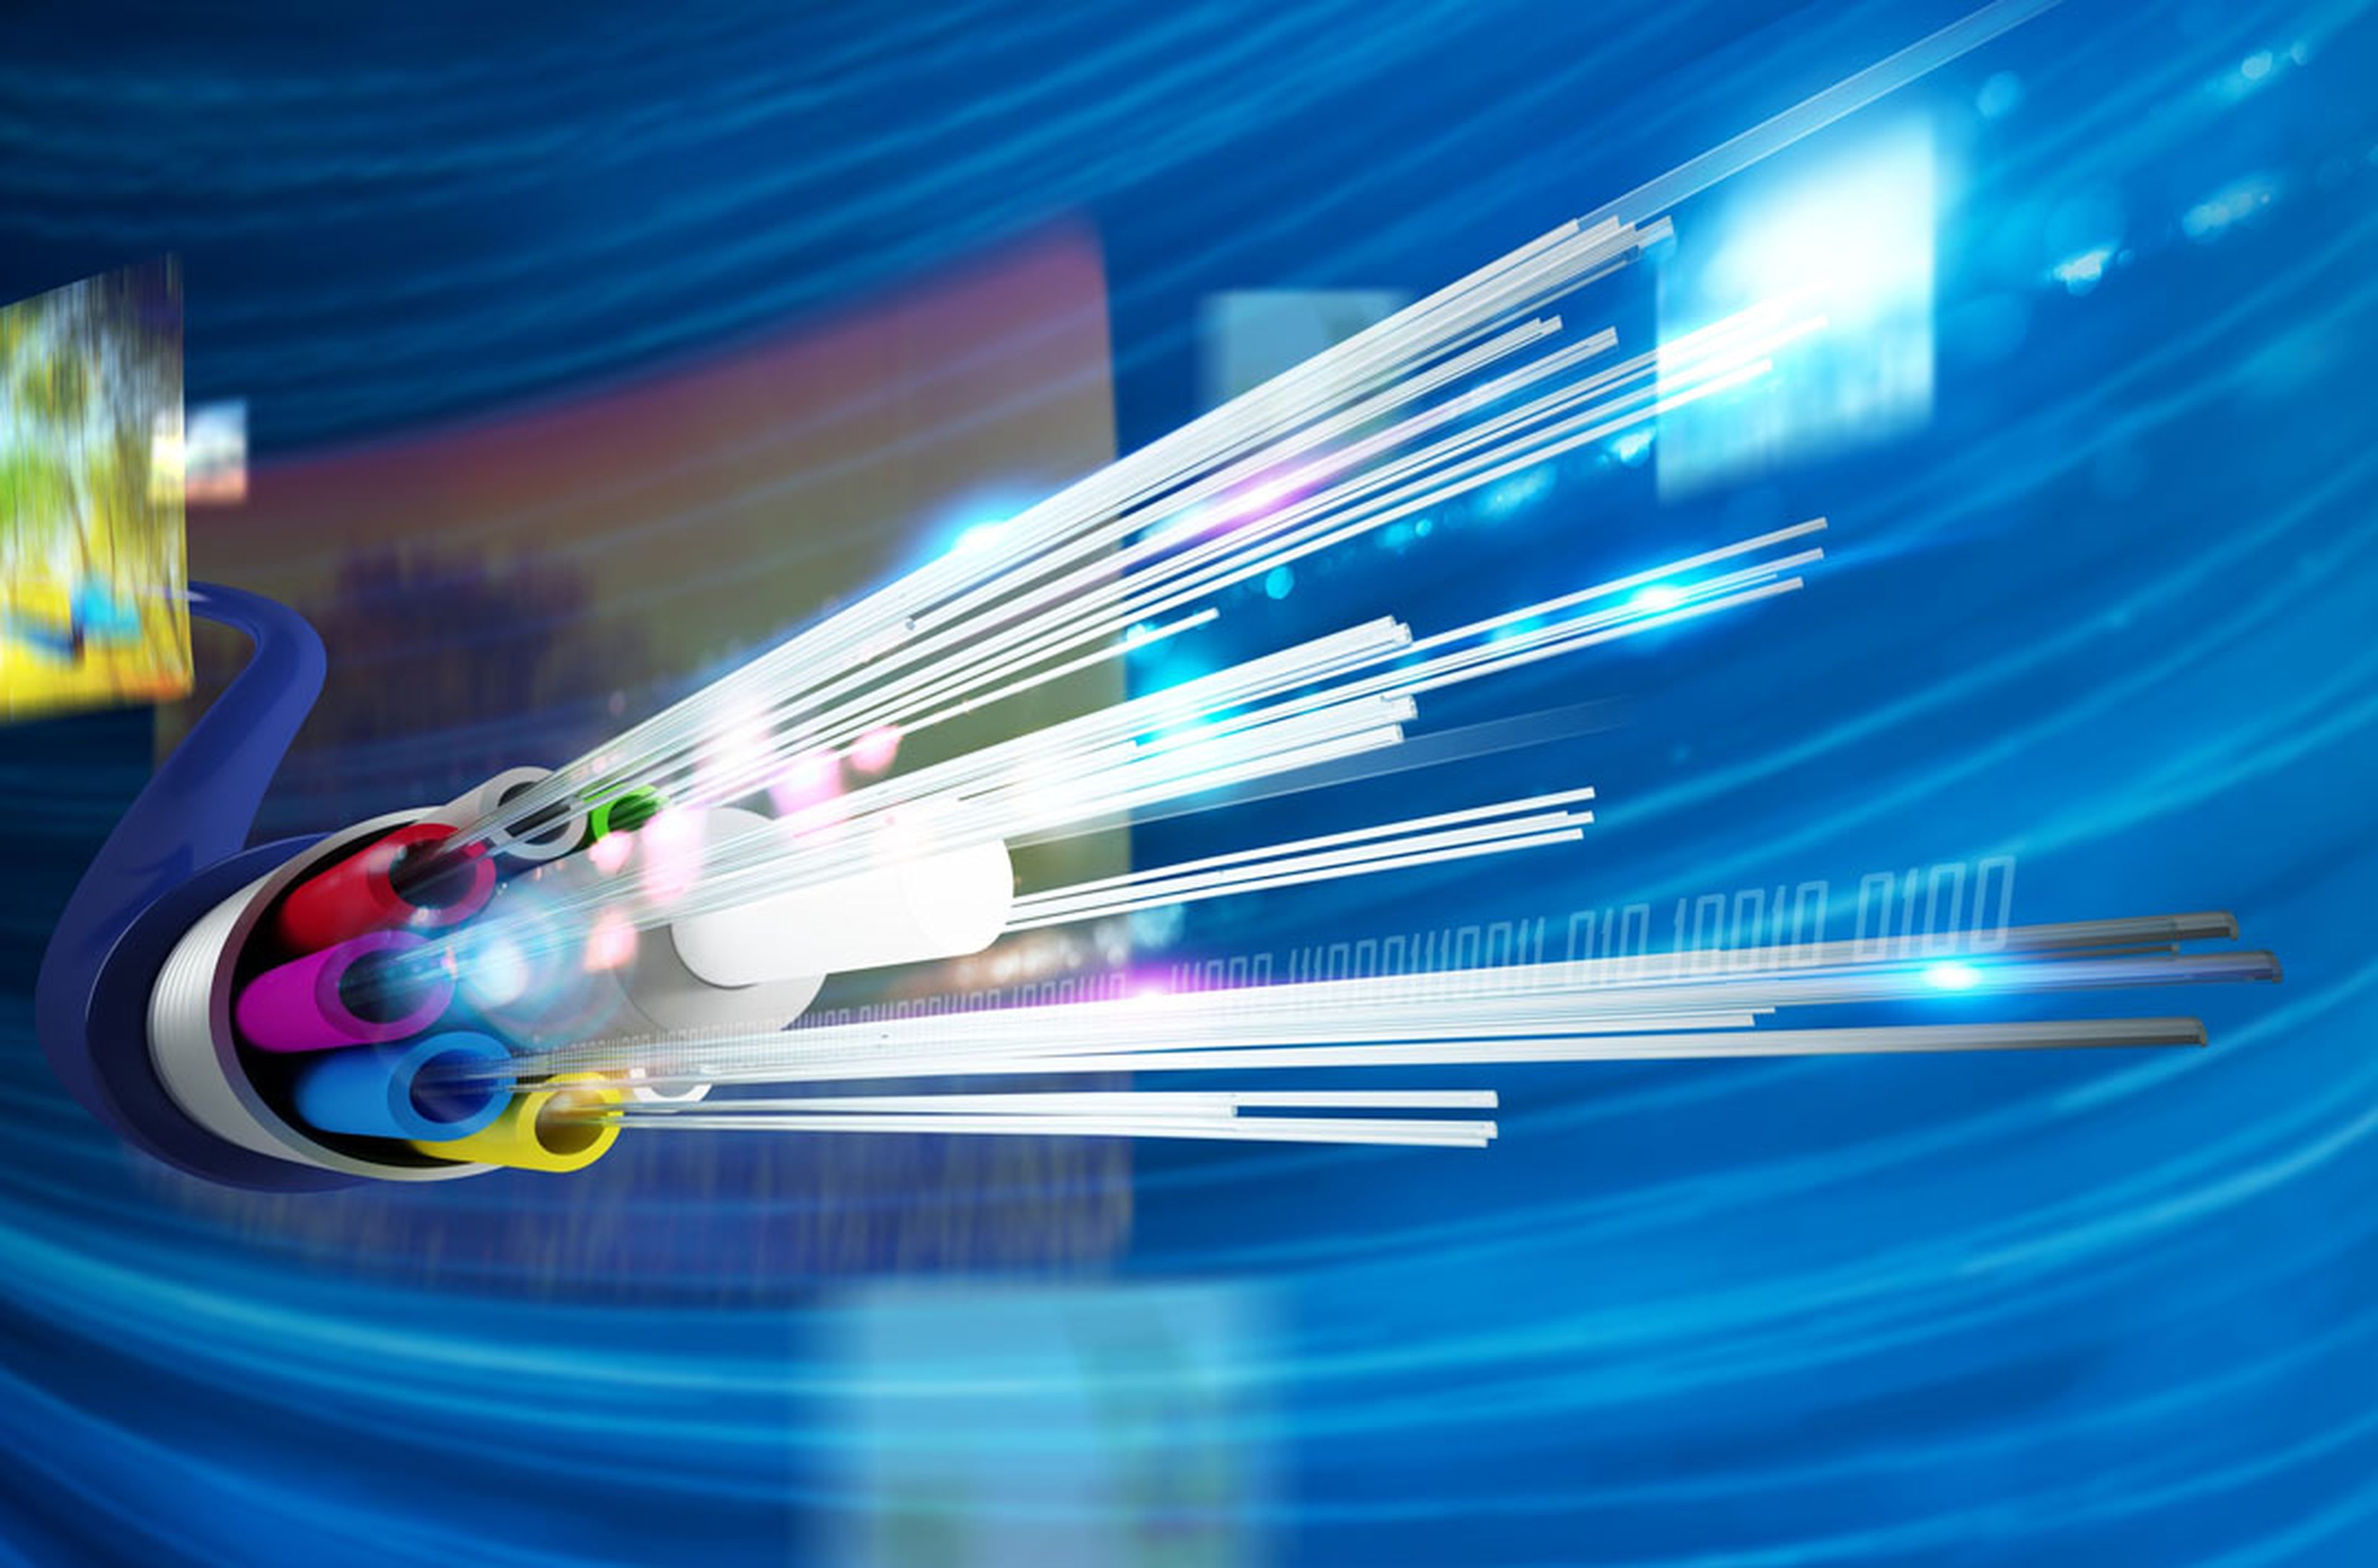 Redes de fibra óptica: La conectividad que el mundo actual necesita